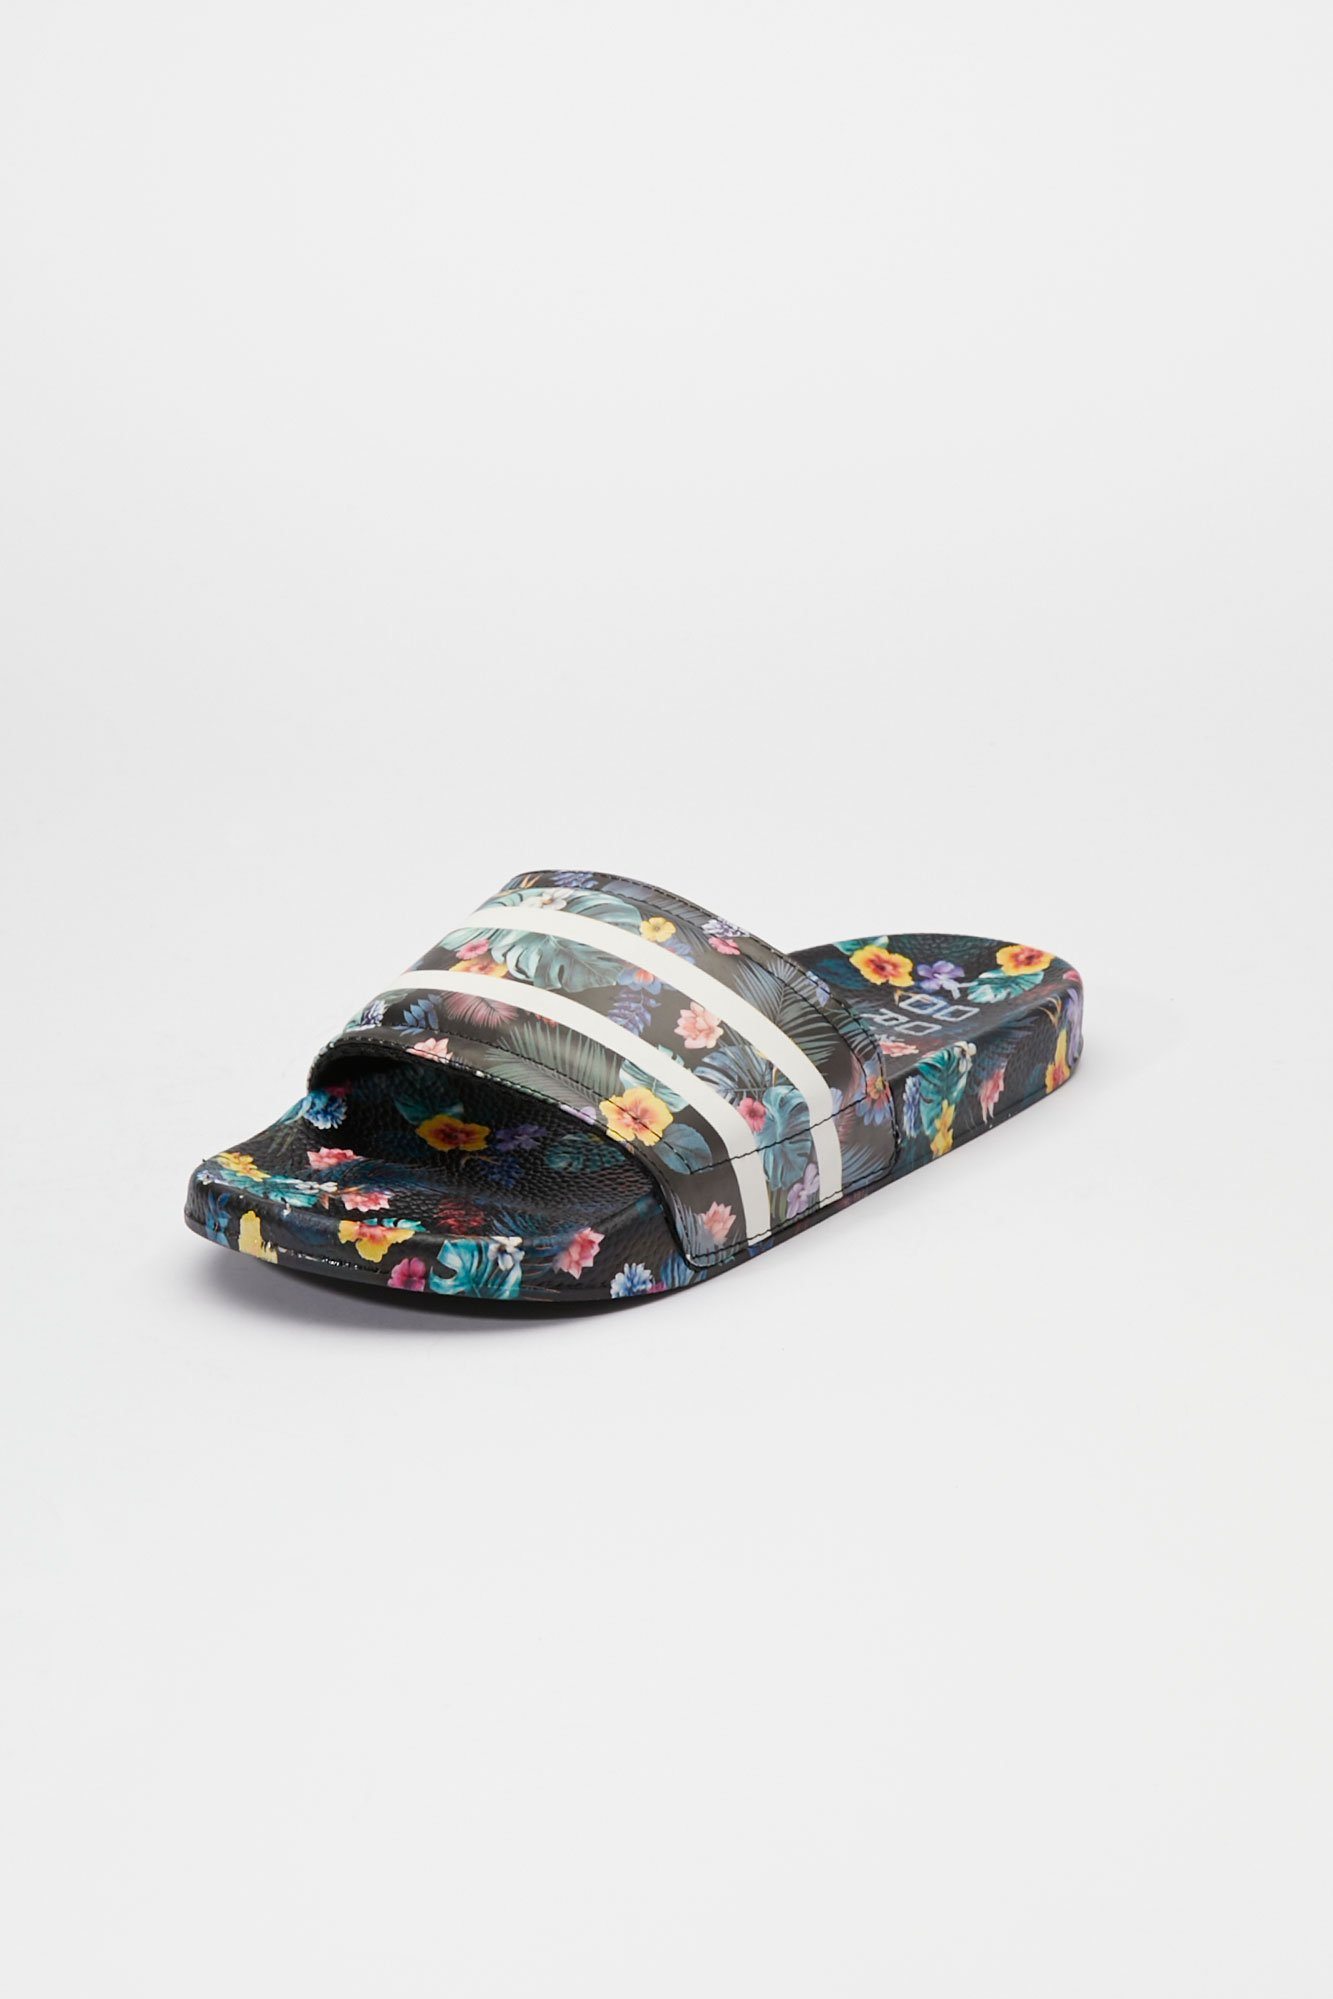 Image of Zoo York Tropical Print Slider Sandal